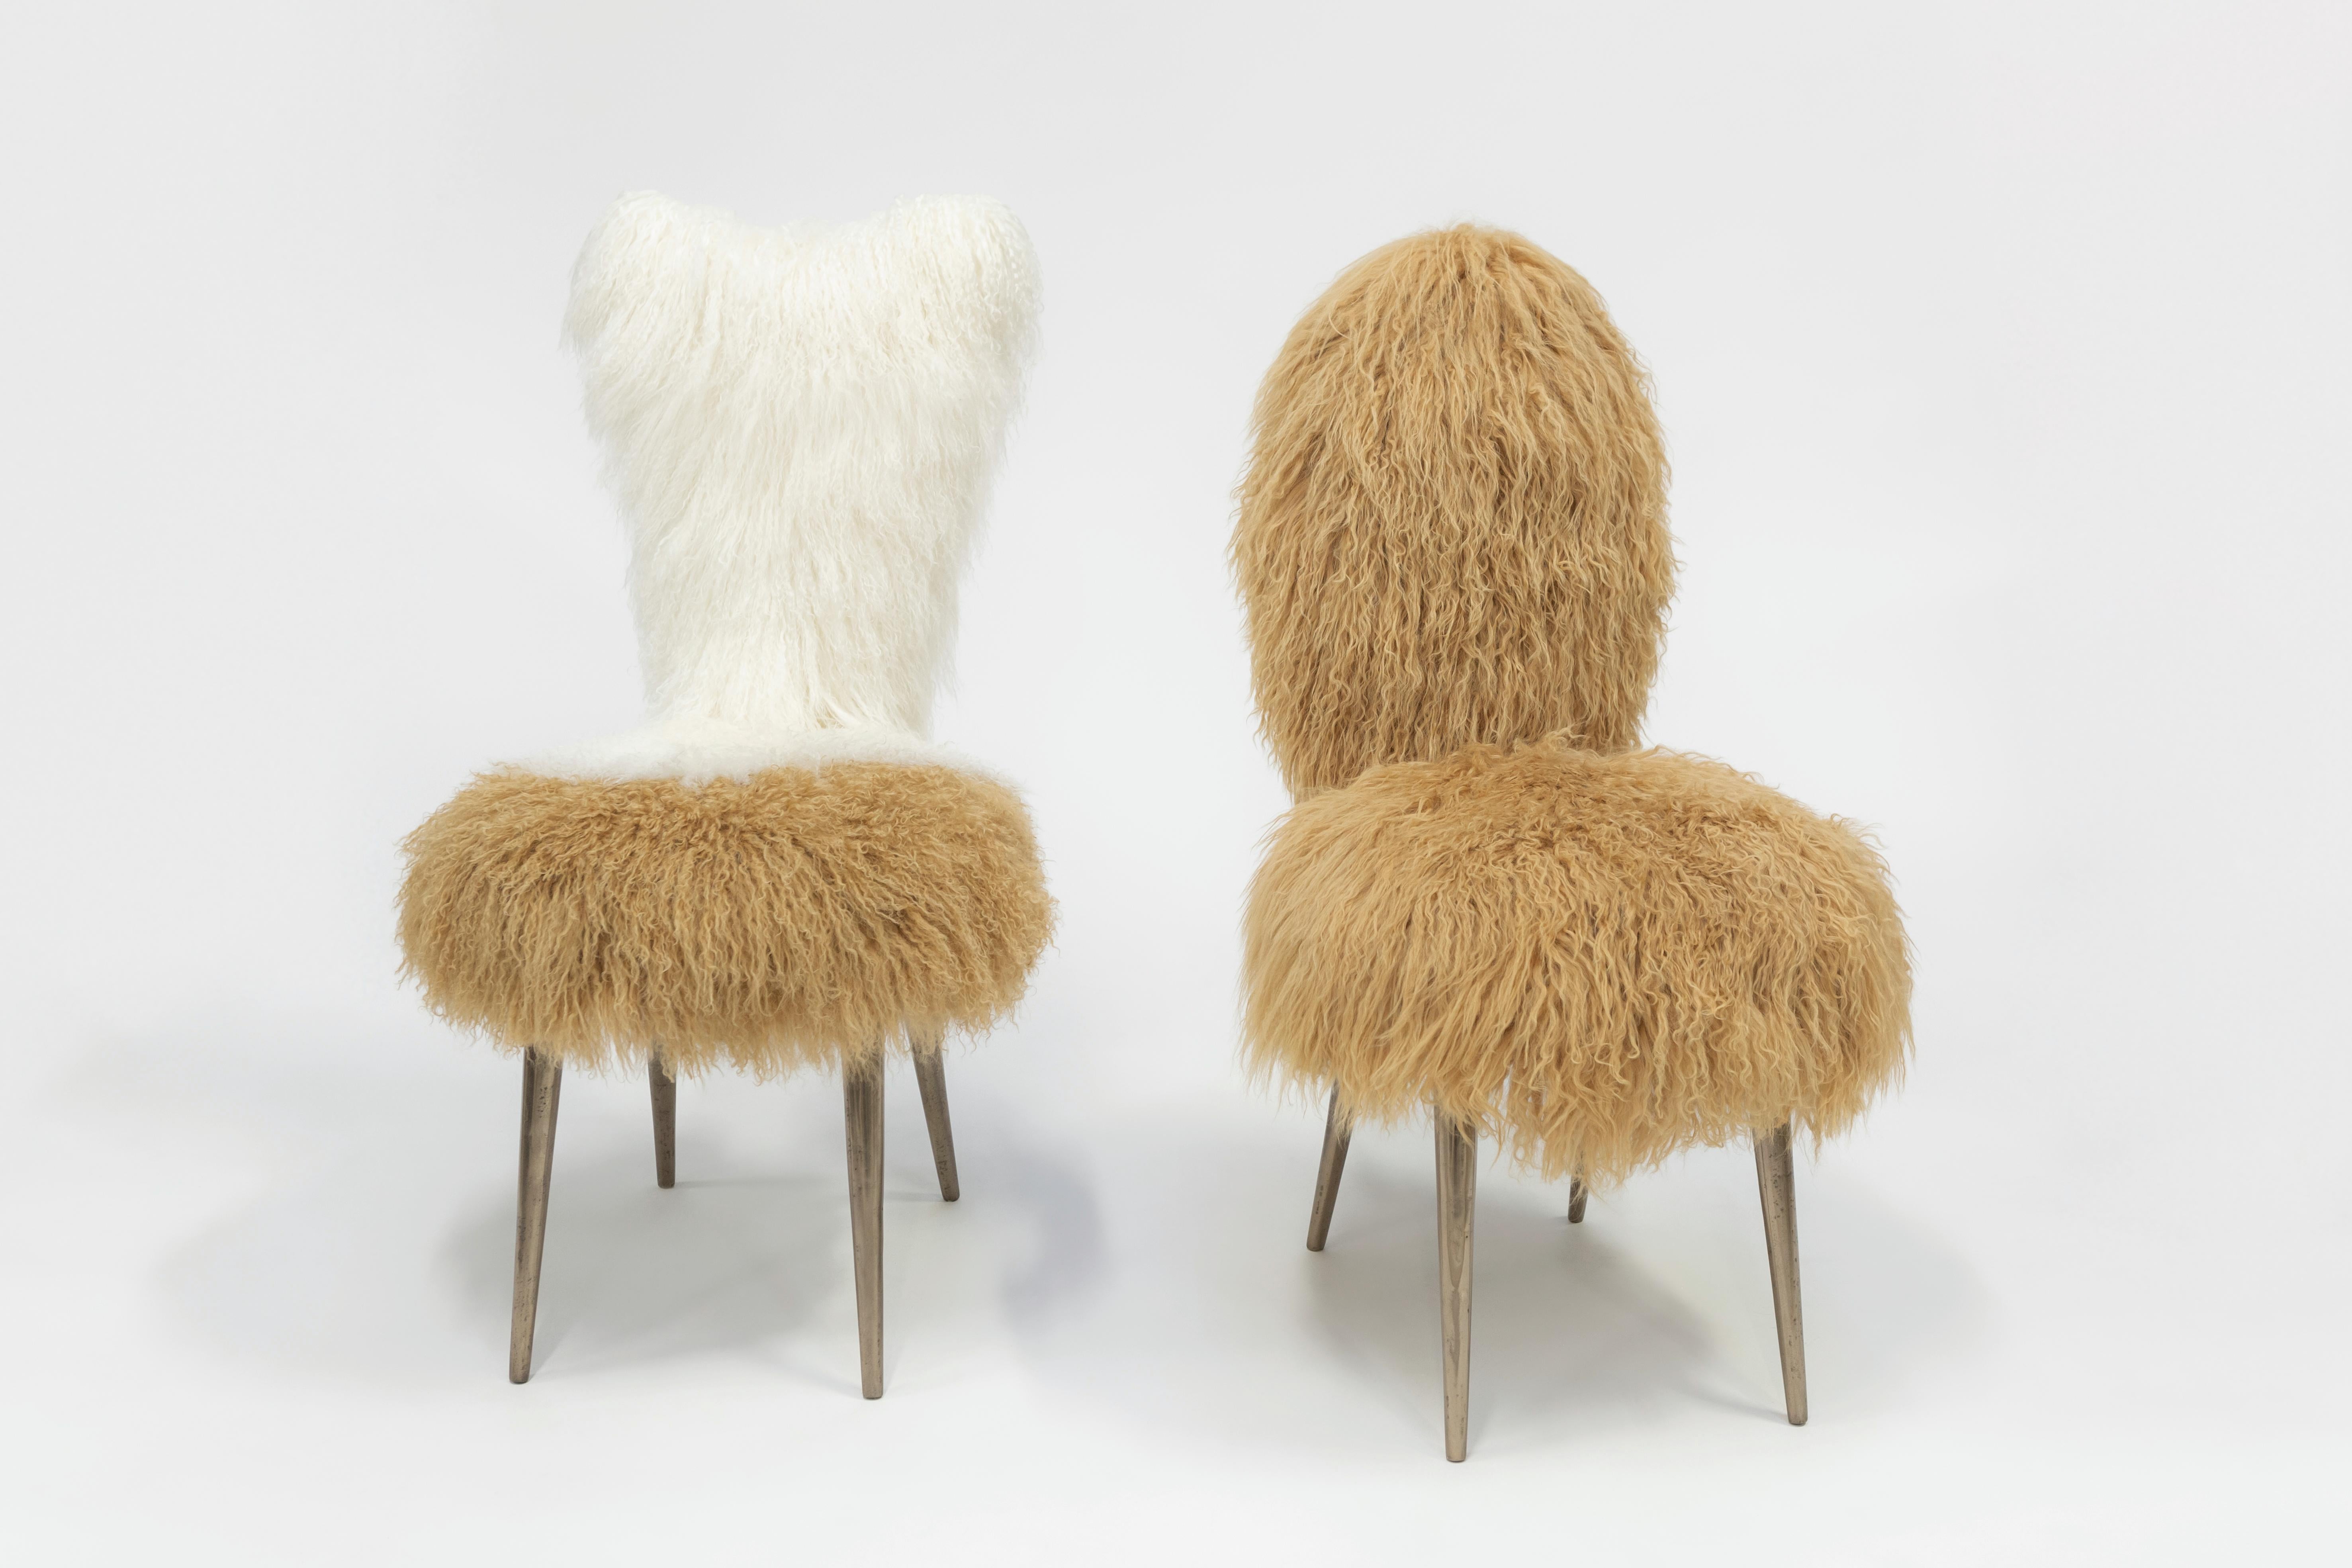 Italian Vintage Chairs 1950 by U. Mascagni Trasformed by Draga&Aurel, Fur, 21st Century